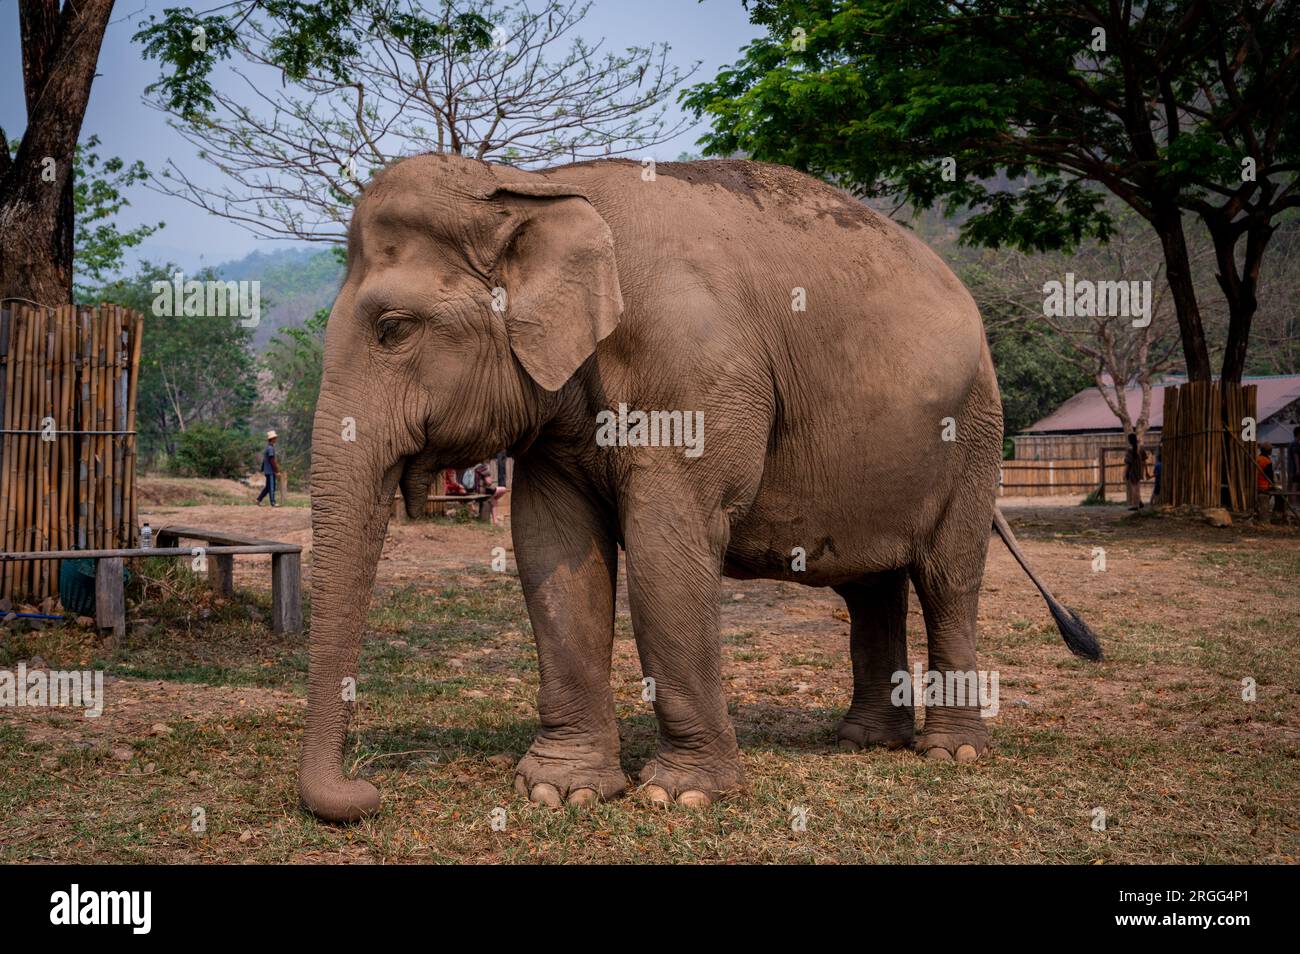 Elephants at Elephant Jungle Sanctuary near Chiang Mai, Thailand Stock Photo